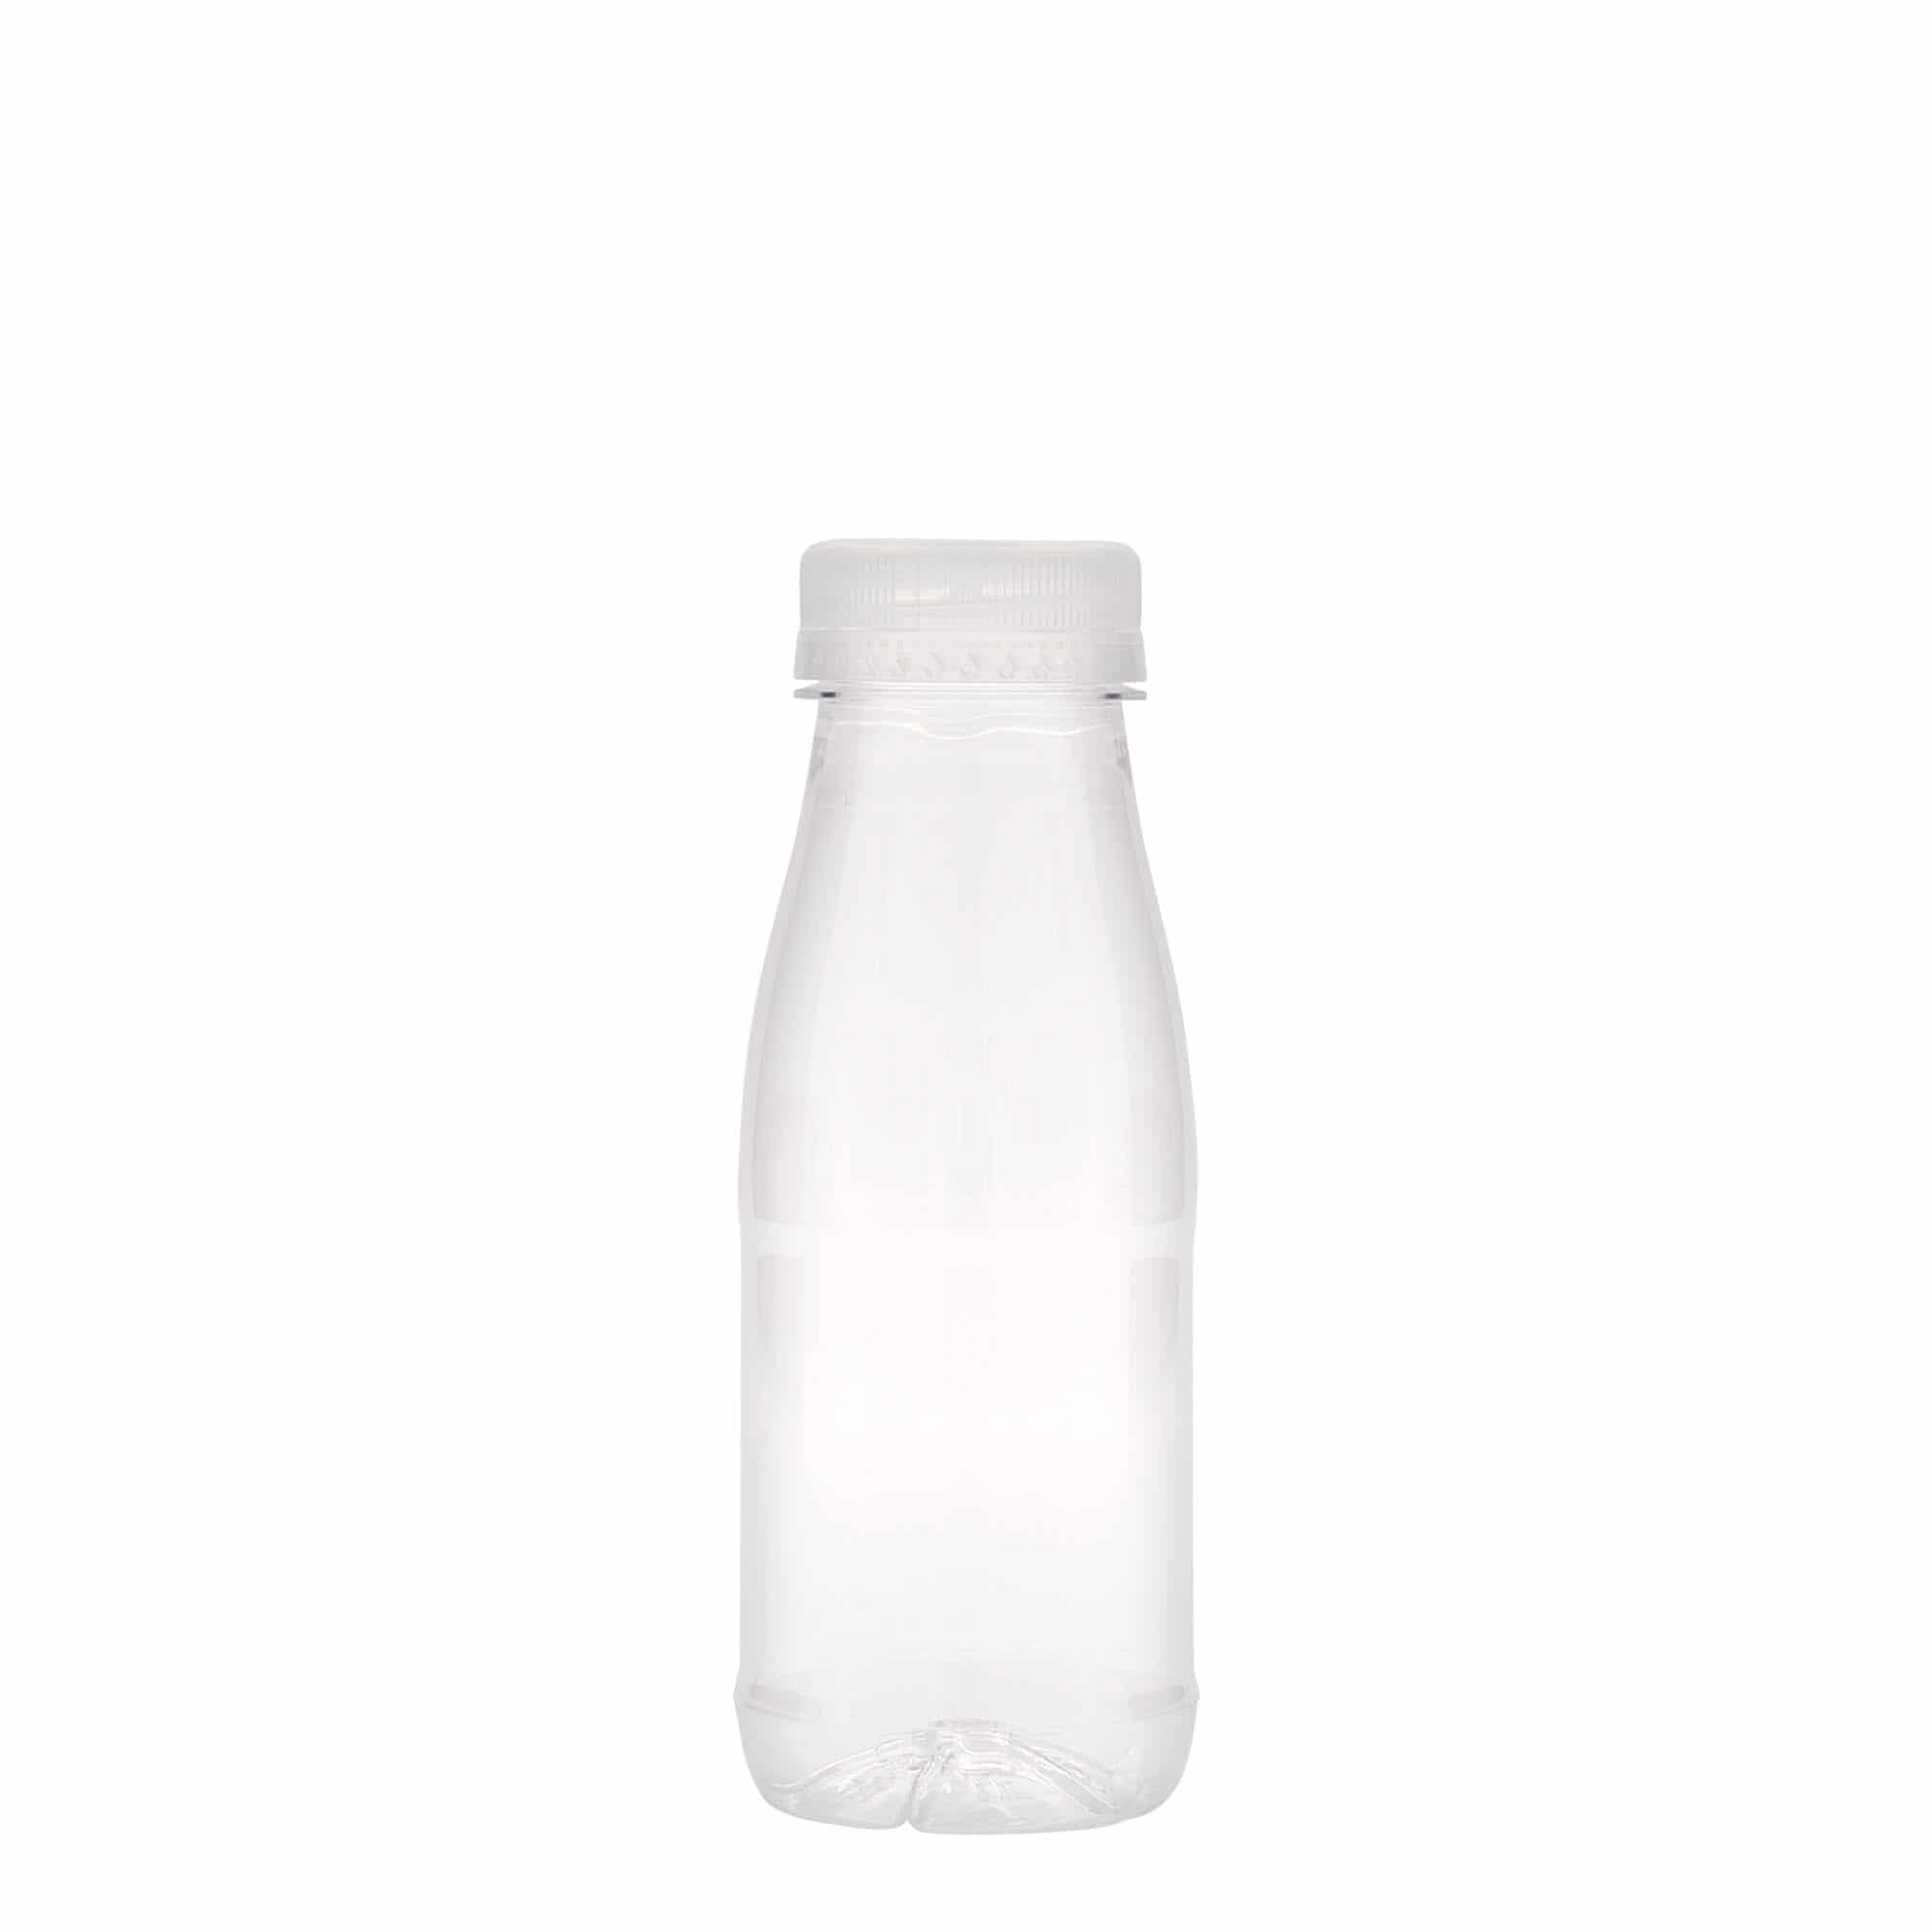 250 ml PET bottle 'Milk and Juice', plastic, closure: 38 mm